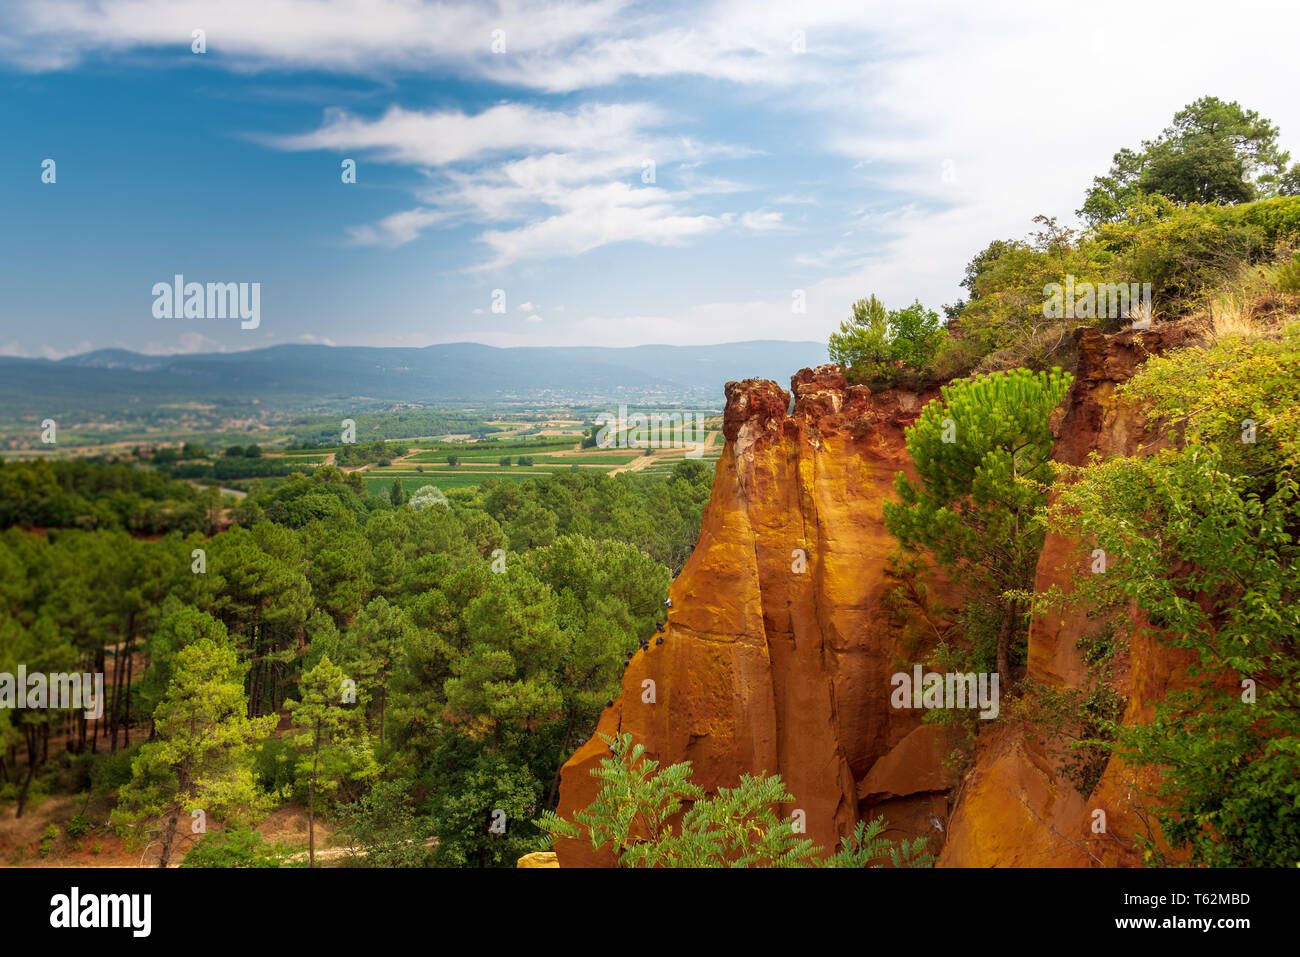 ROUSSILLON, Frankreich/August 17, 2016: Ein Blick auf die ockerfarbenen Klippen von Roussillon, geordnet als eines der schönsten Dörfer von Frankreich Stockfoto